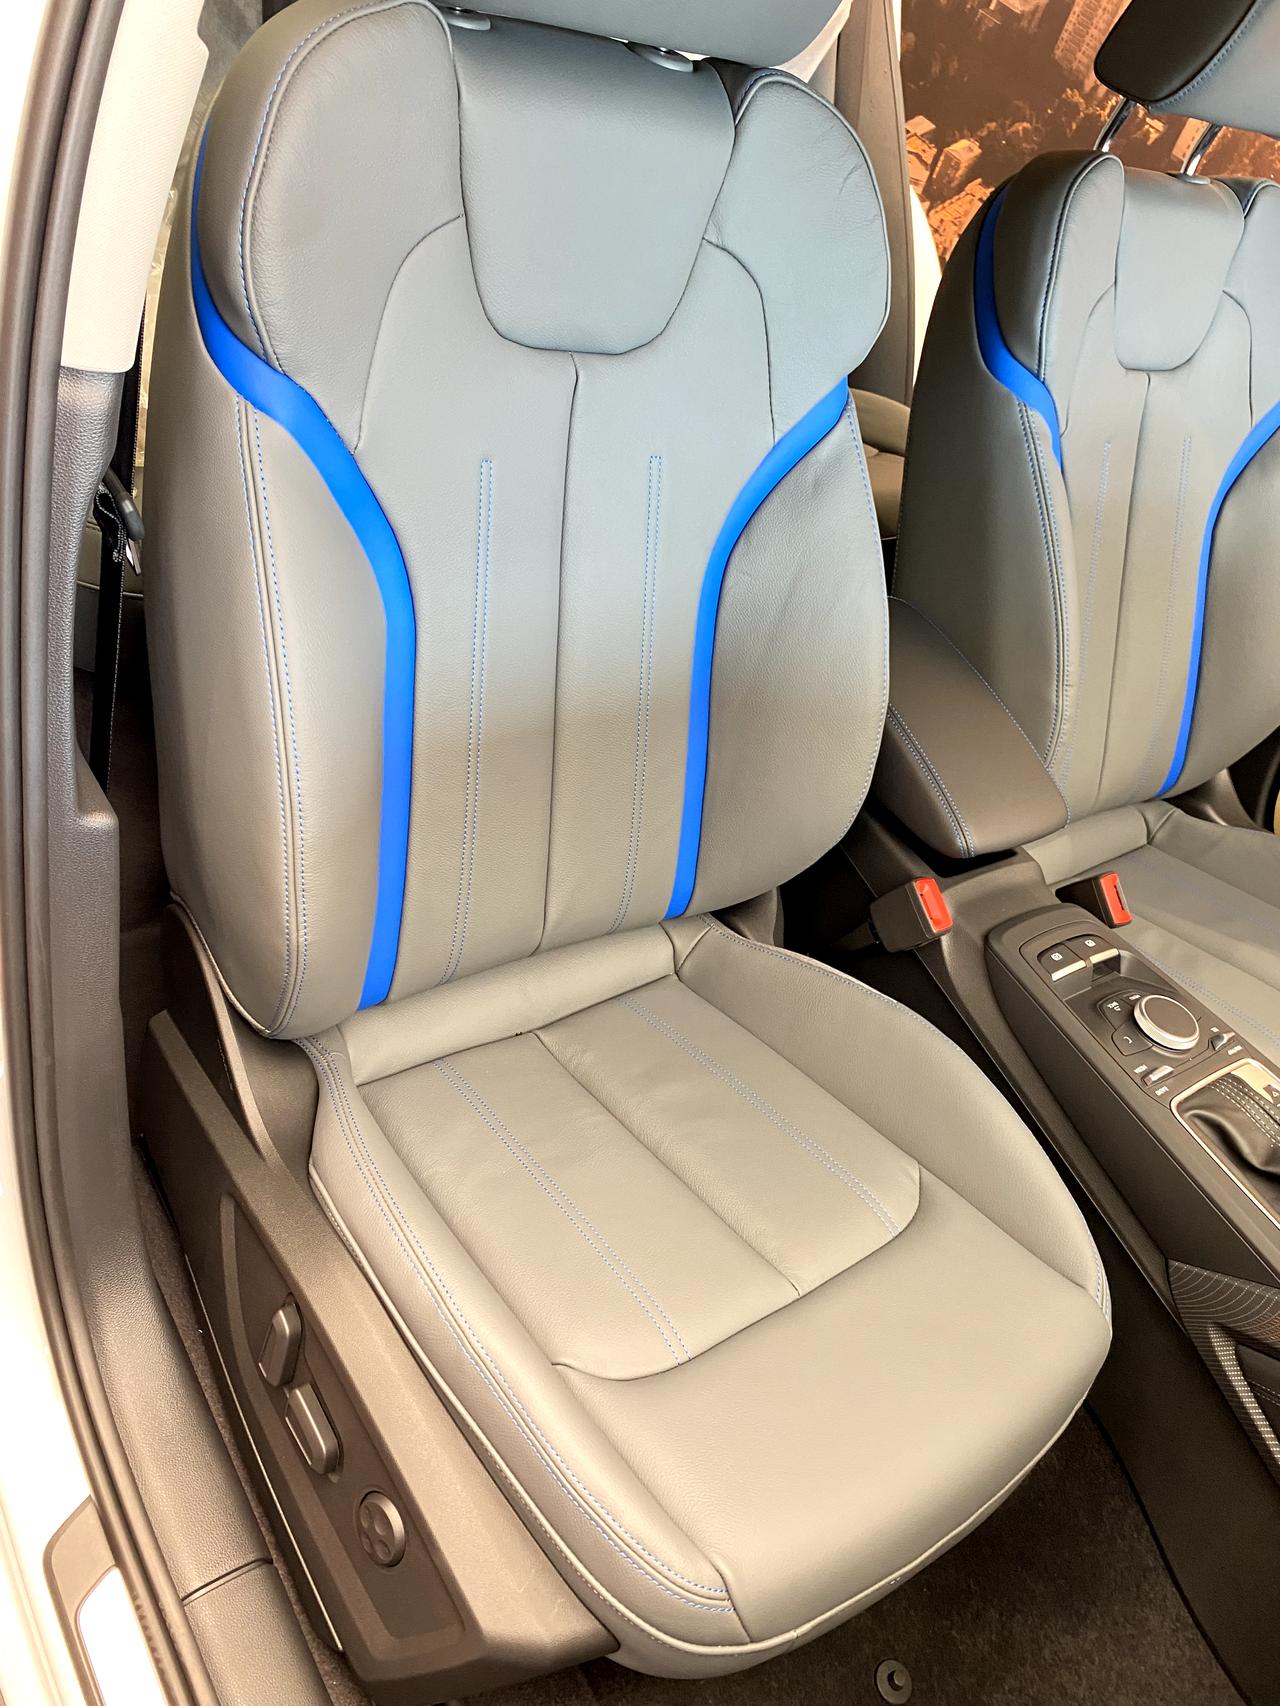 奥迪Q2L 奥迪q2l中配时尚动感车型的座椅到底有几种颜色？为什么的是灰蓝色拼接的